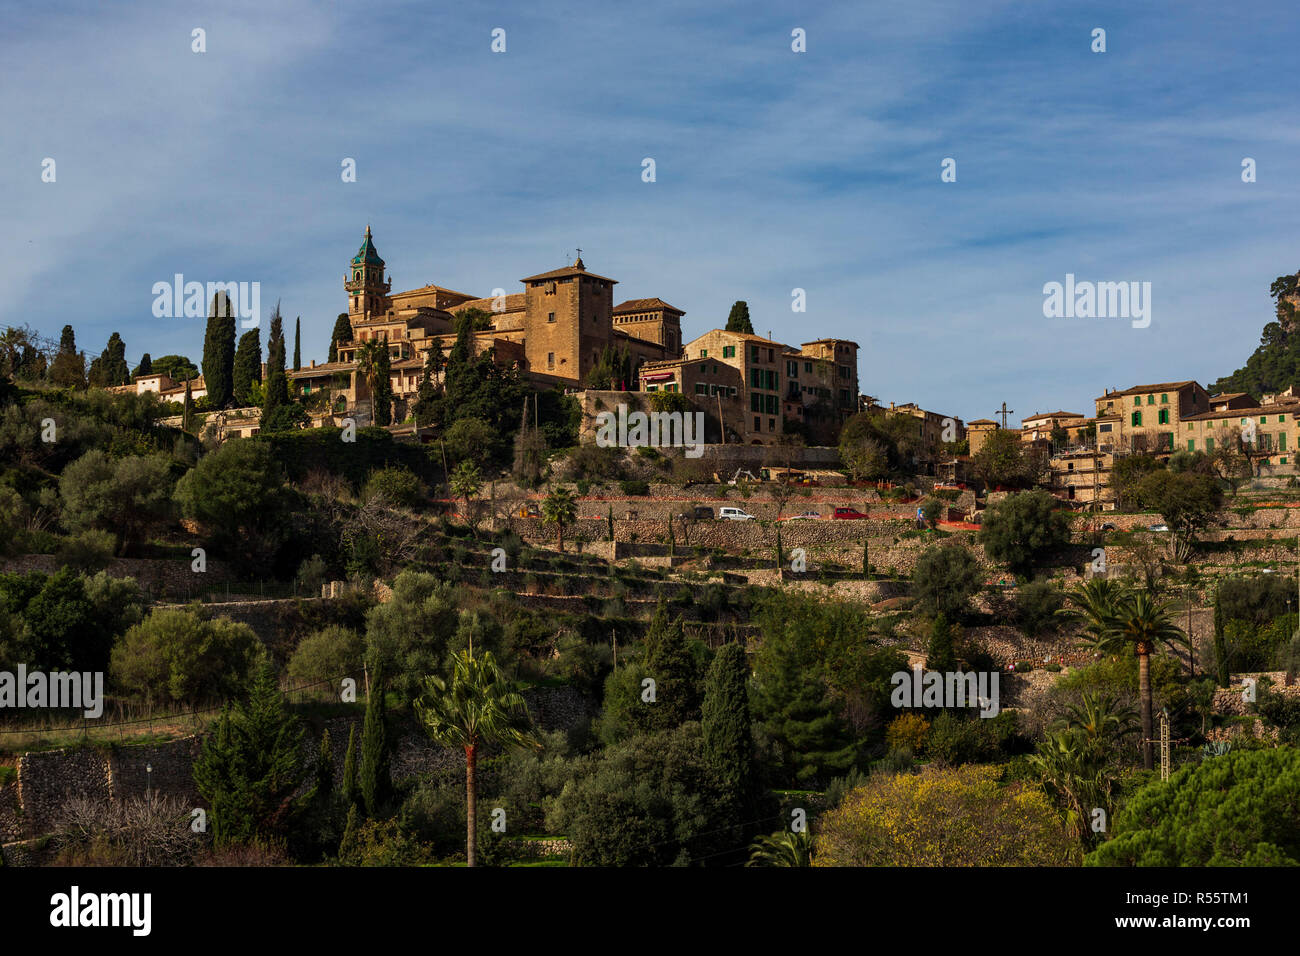 View of the mountain village of Valldemossa, Mallorca, Majorca, Balearics, Spain Stock Photo